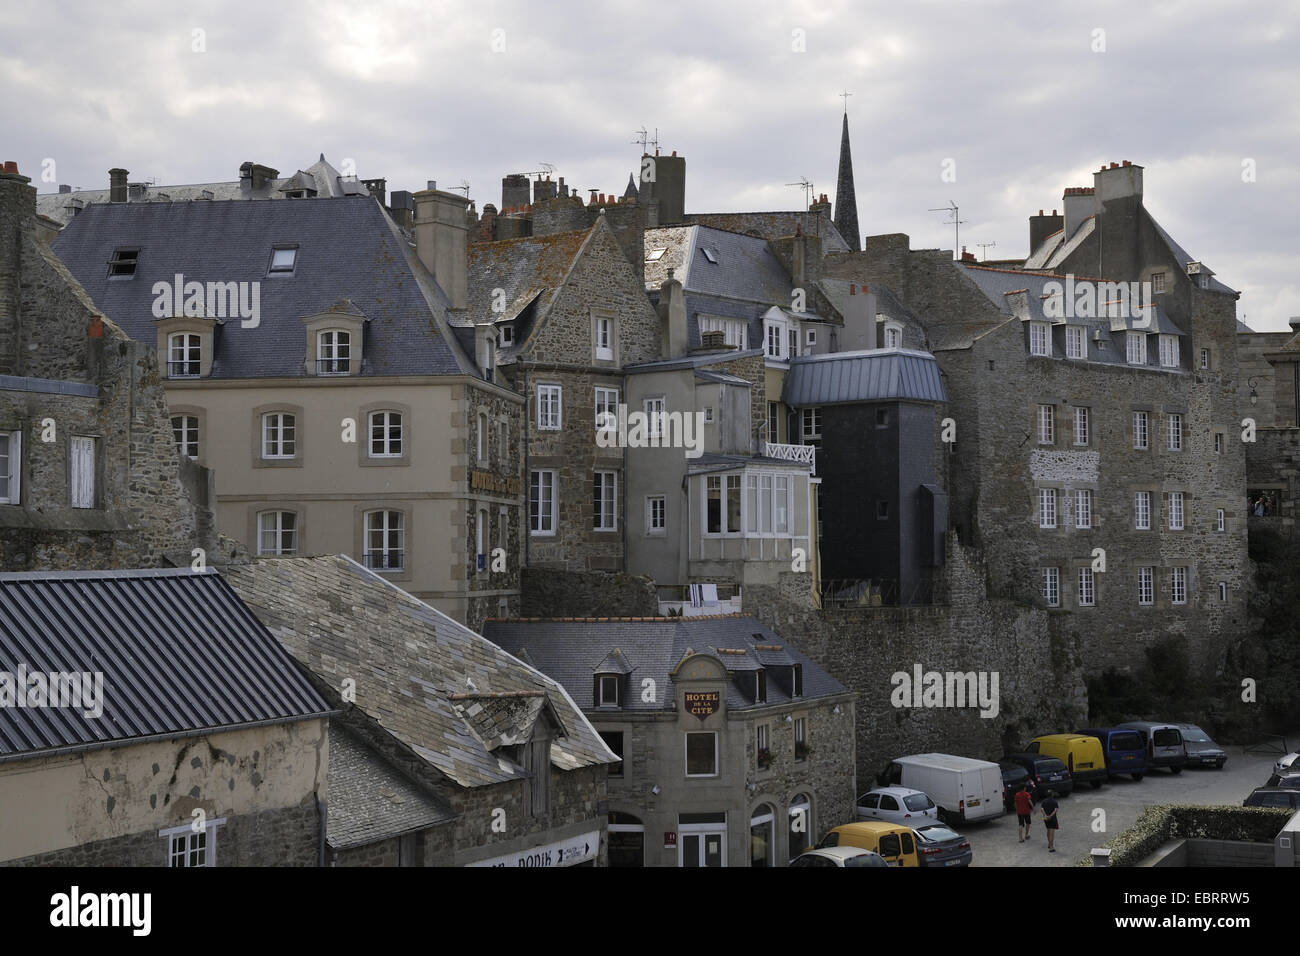 La densité des édifices de la vieille ville, France, Bretagne, Saint-Malo Banque D'Images